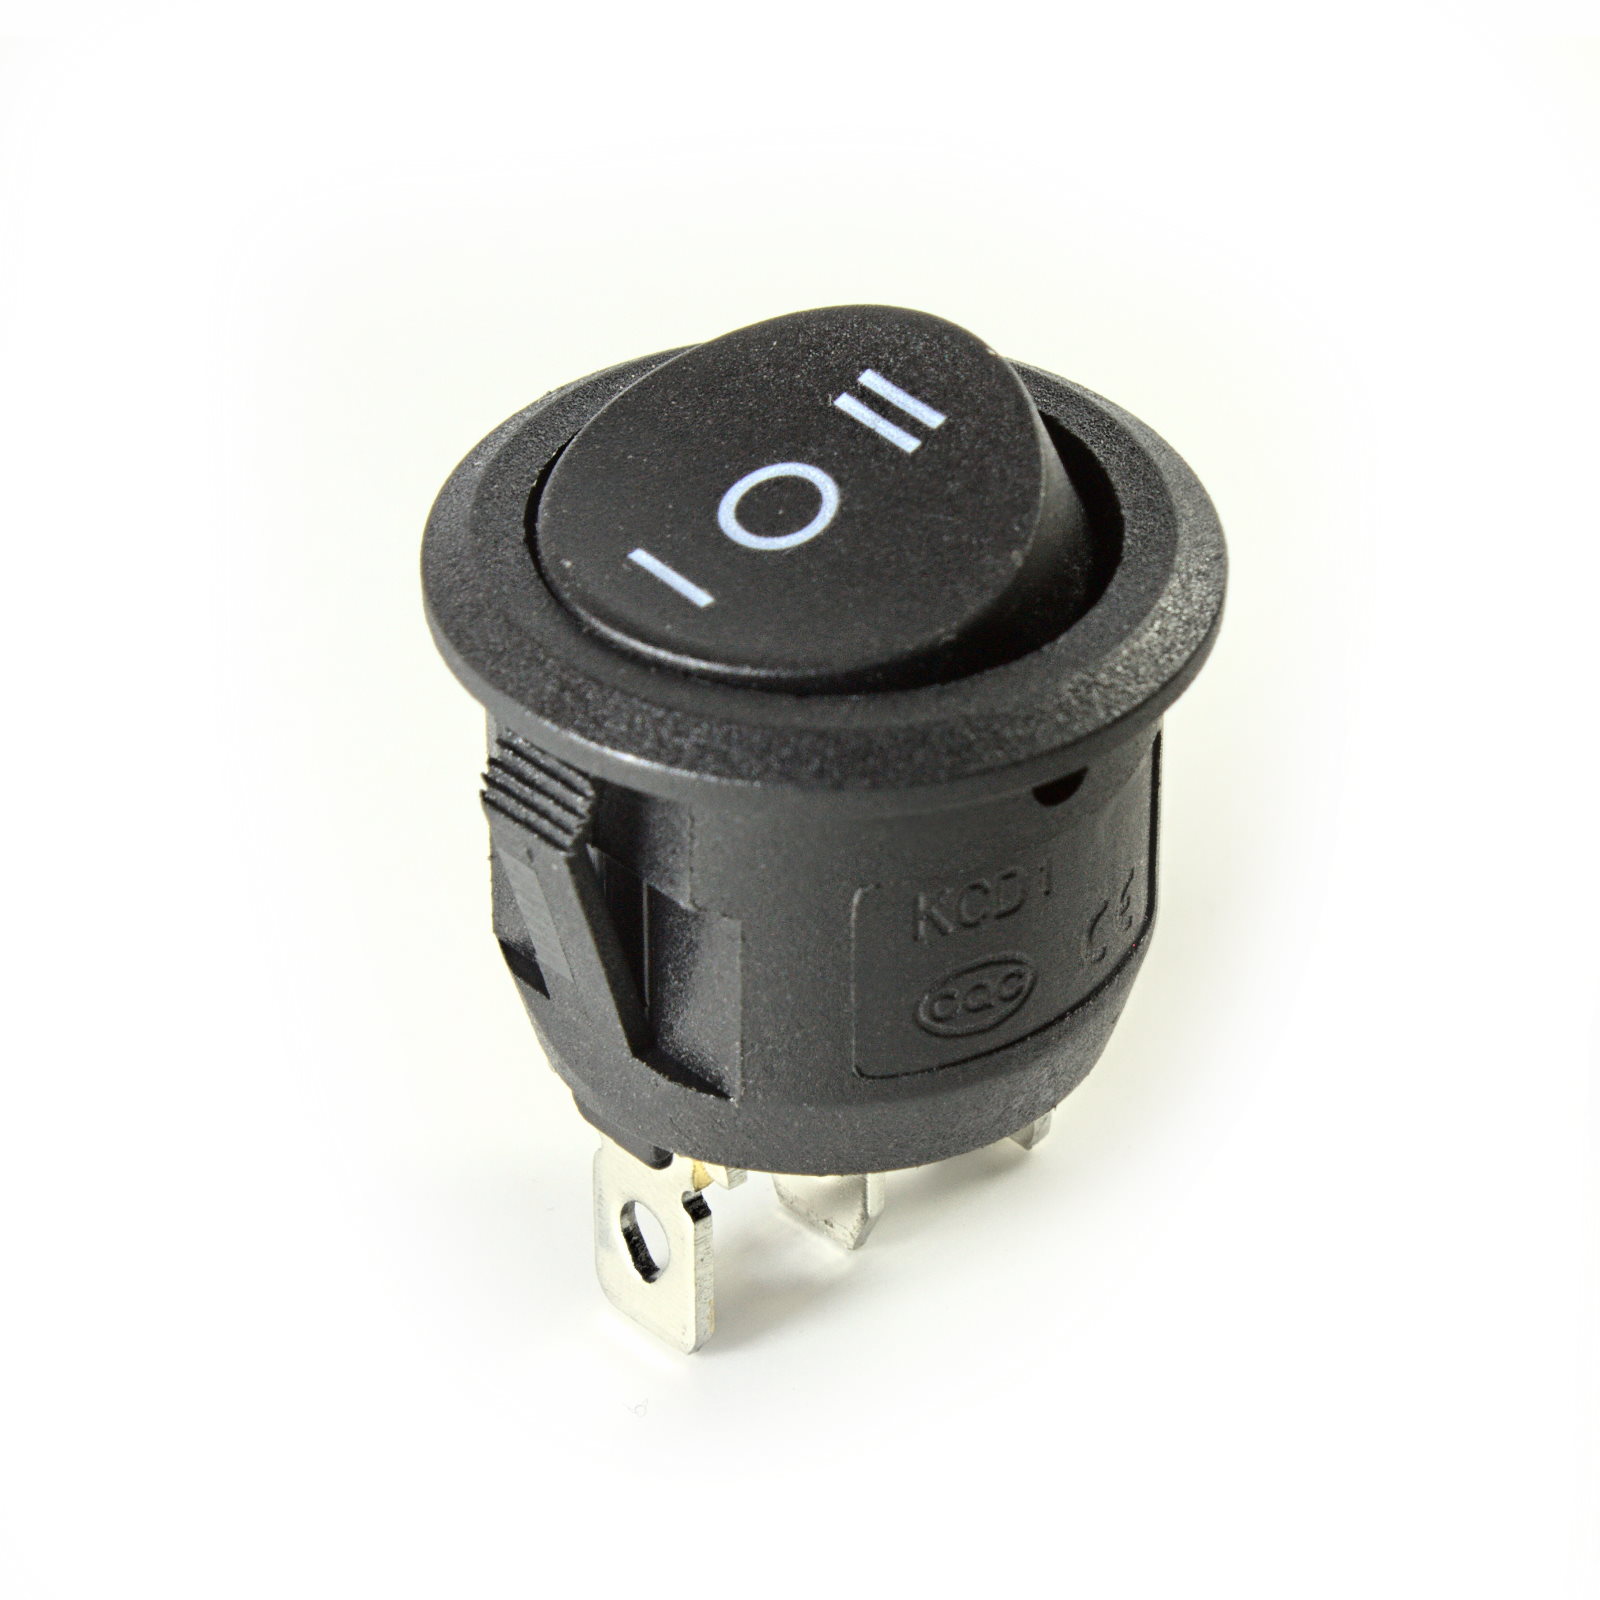 STOPP Schalter DECA rot Push Pull 1-Kontaktebene mit Lötanschluss